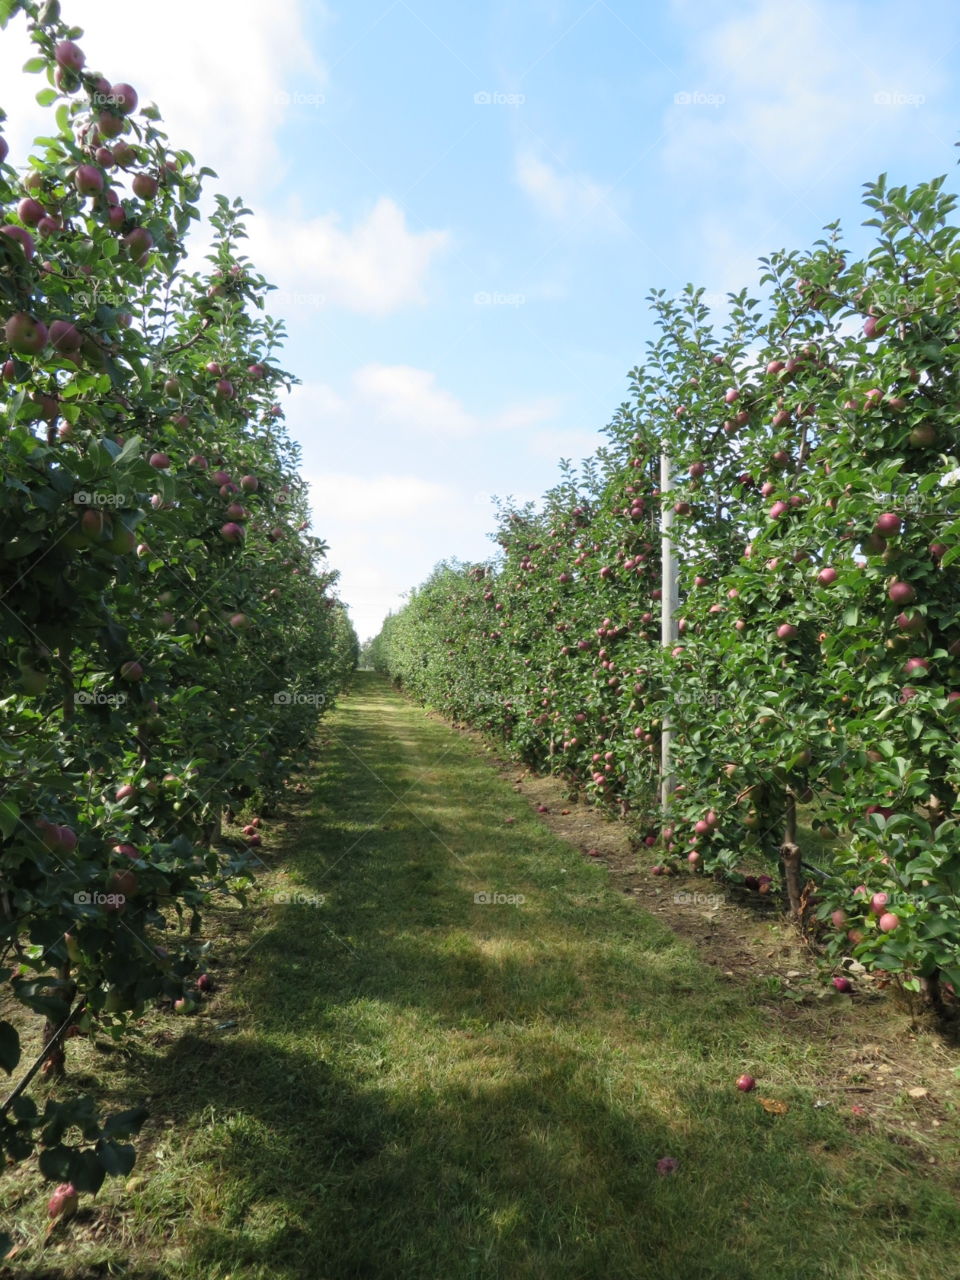 Apple Orchard. Macs at Tougas